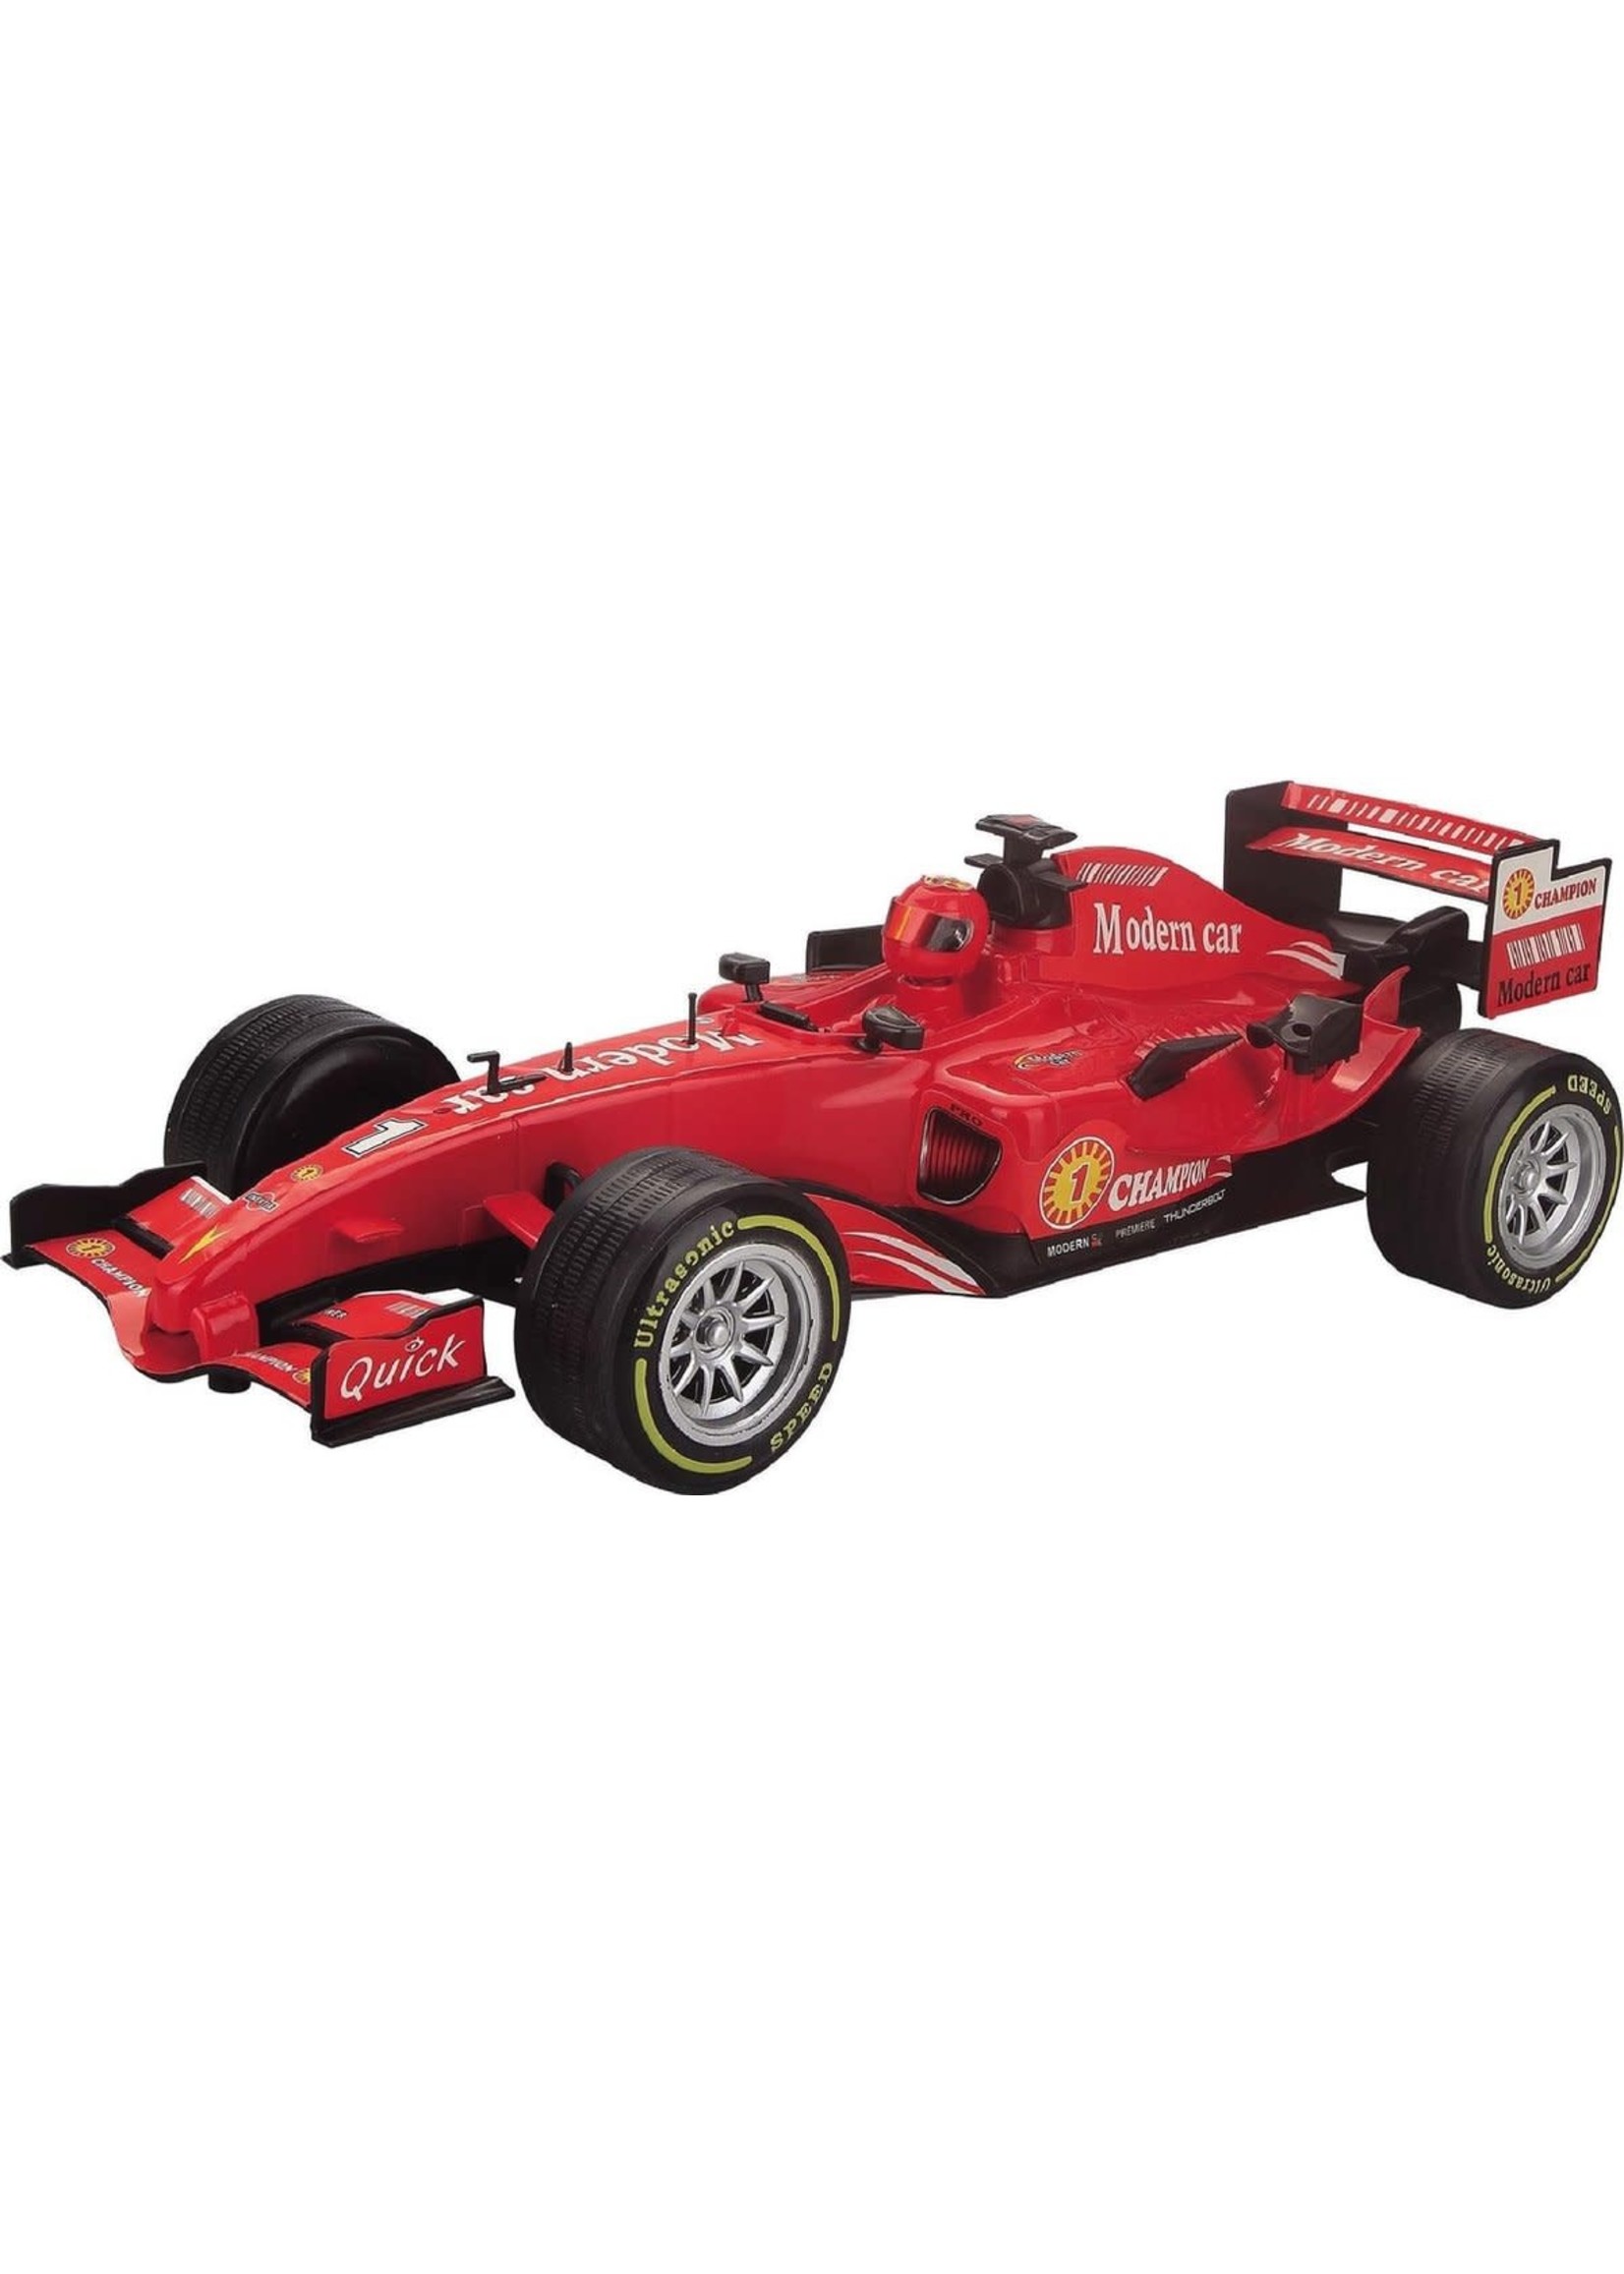 jollyvroom F1 Racewagen - Racegeluid - Frictie motor - Rood - 1:14 - 33 cm